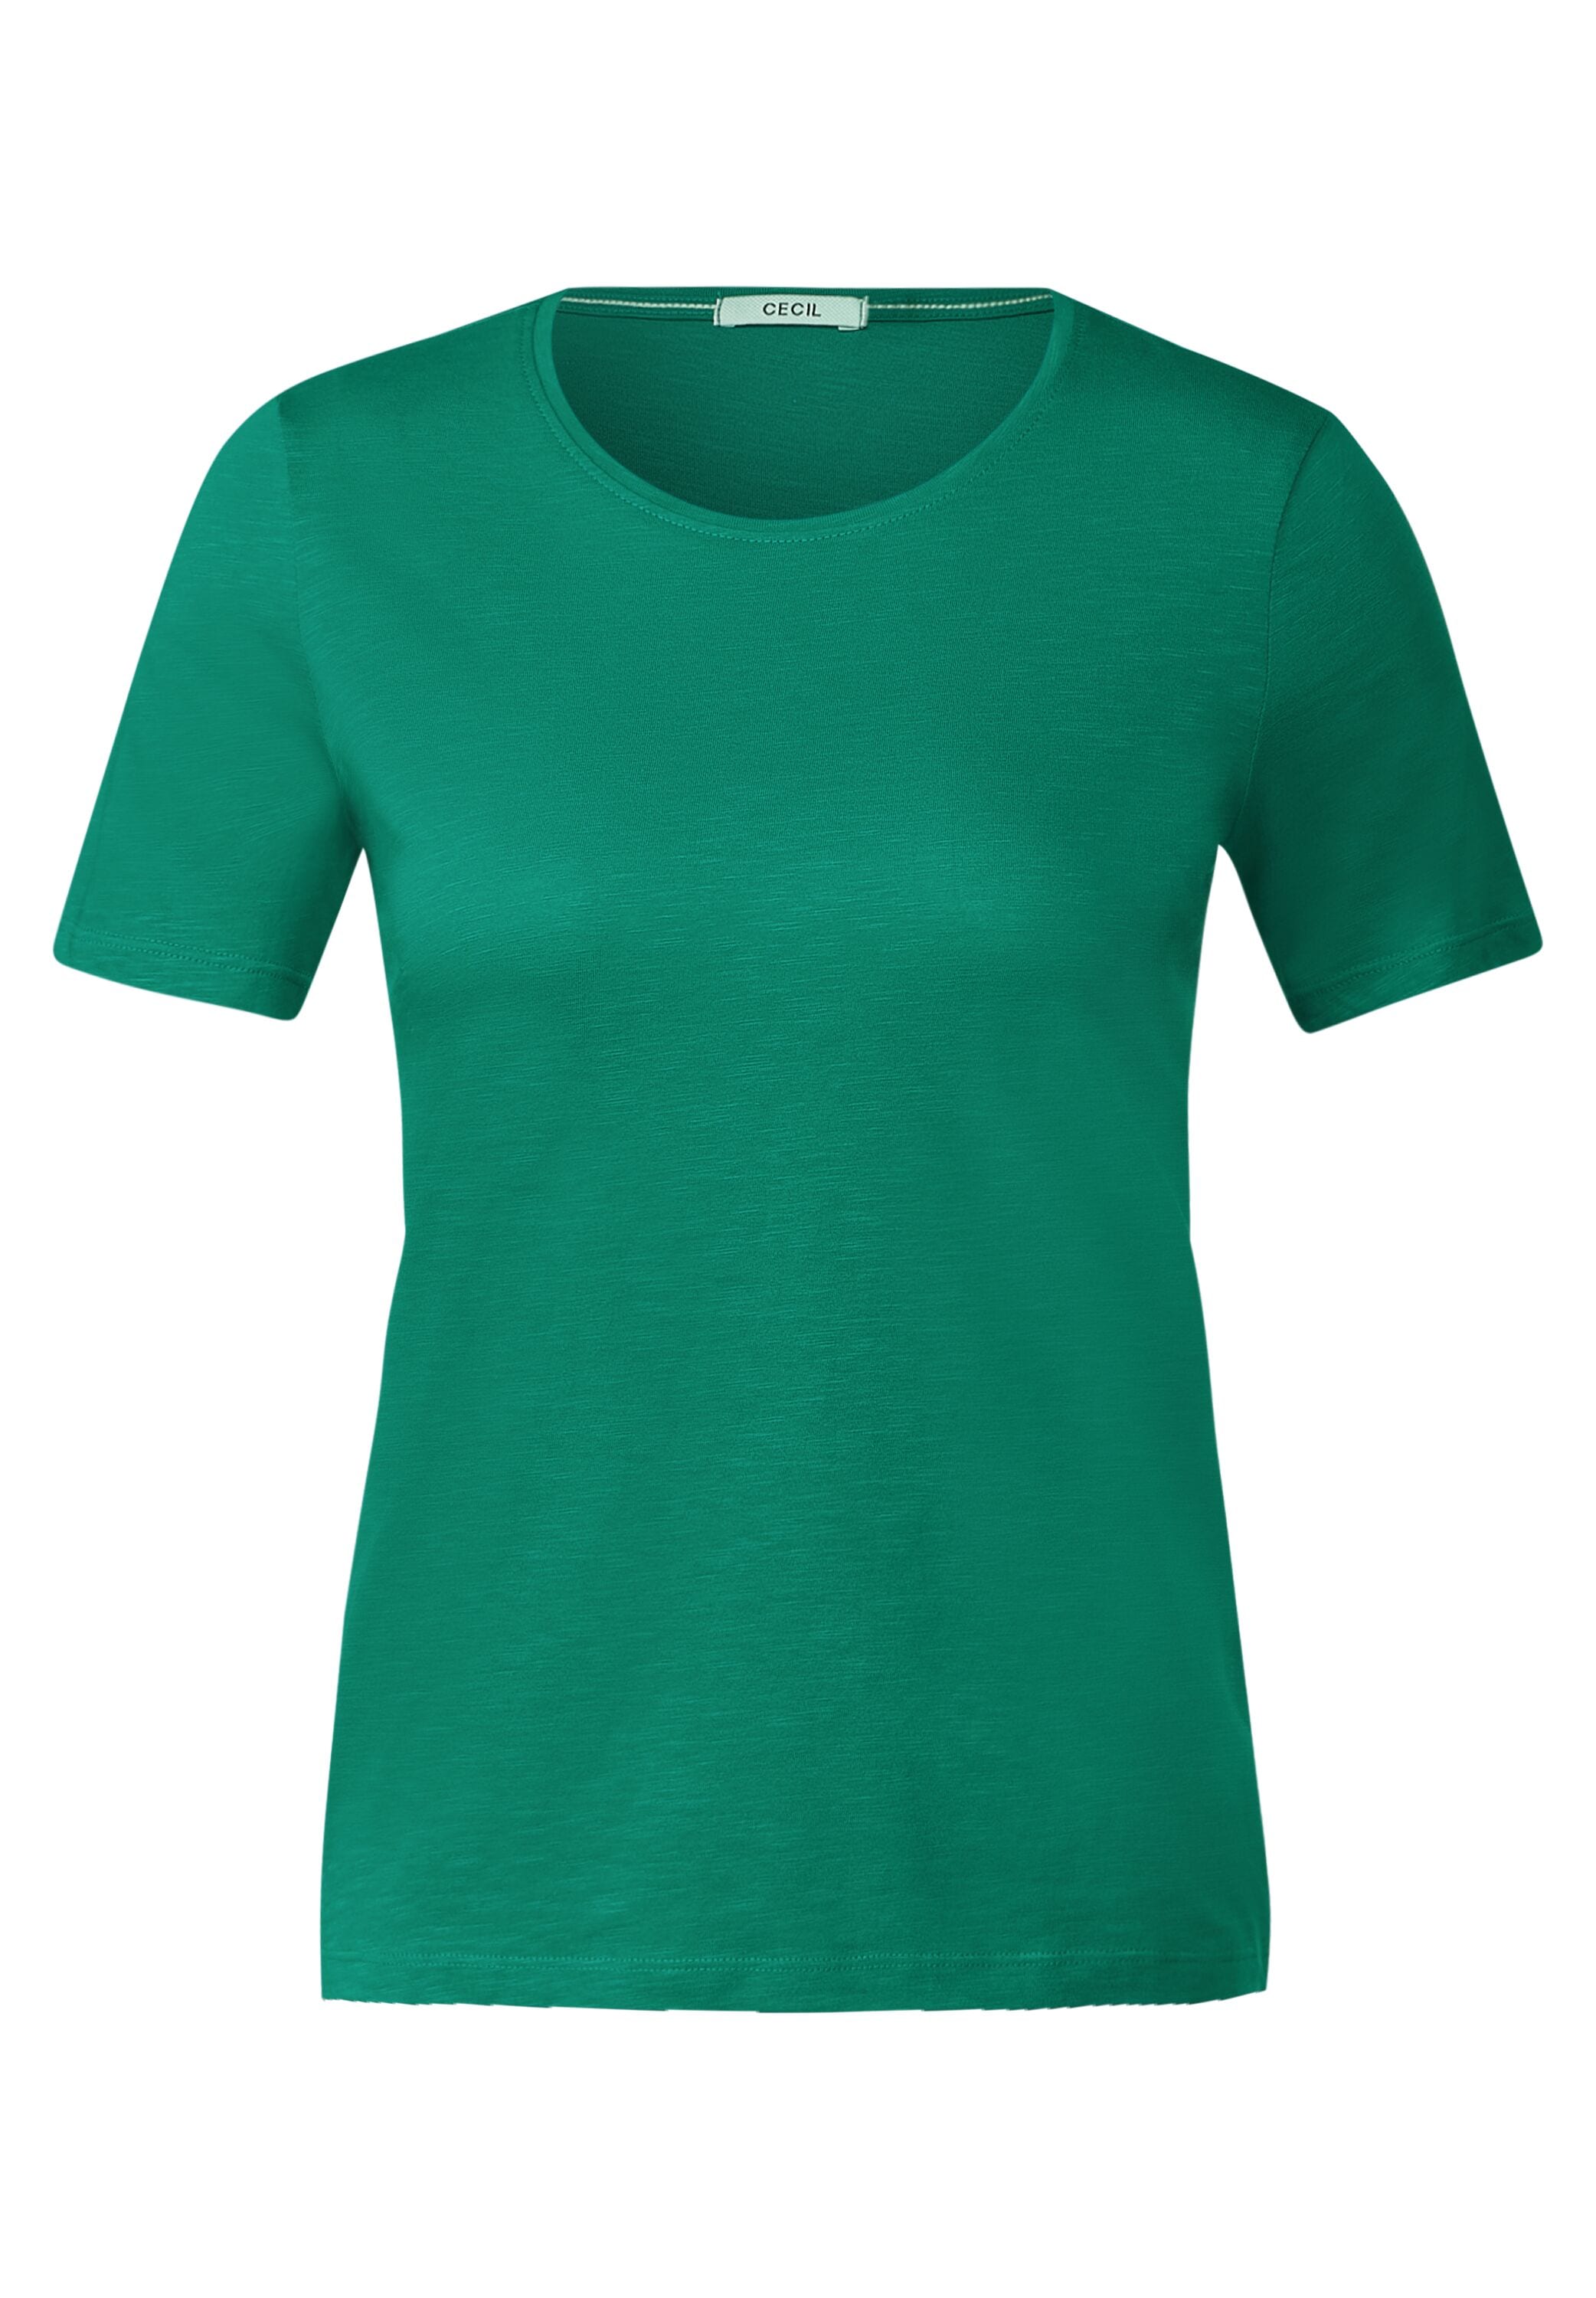 Cecil T-Shirt, Baumwolle shoppen reiner aus